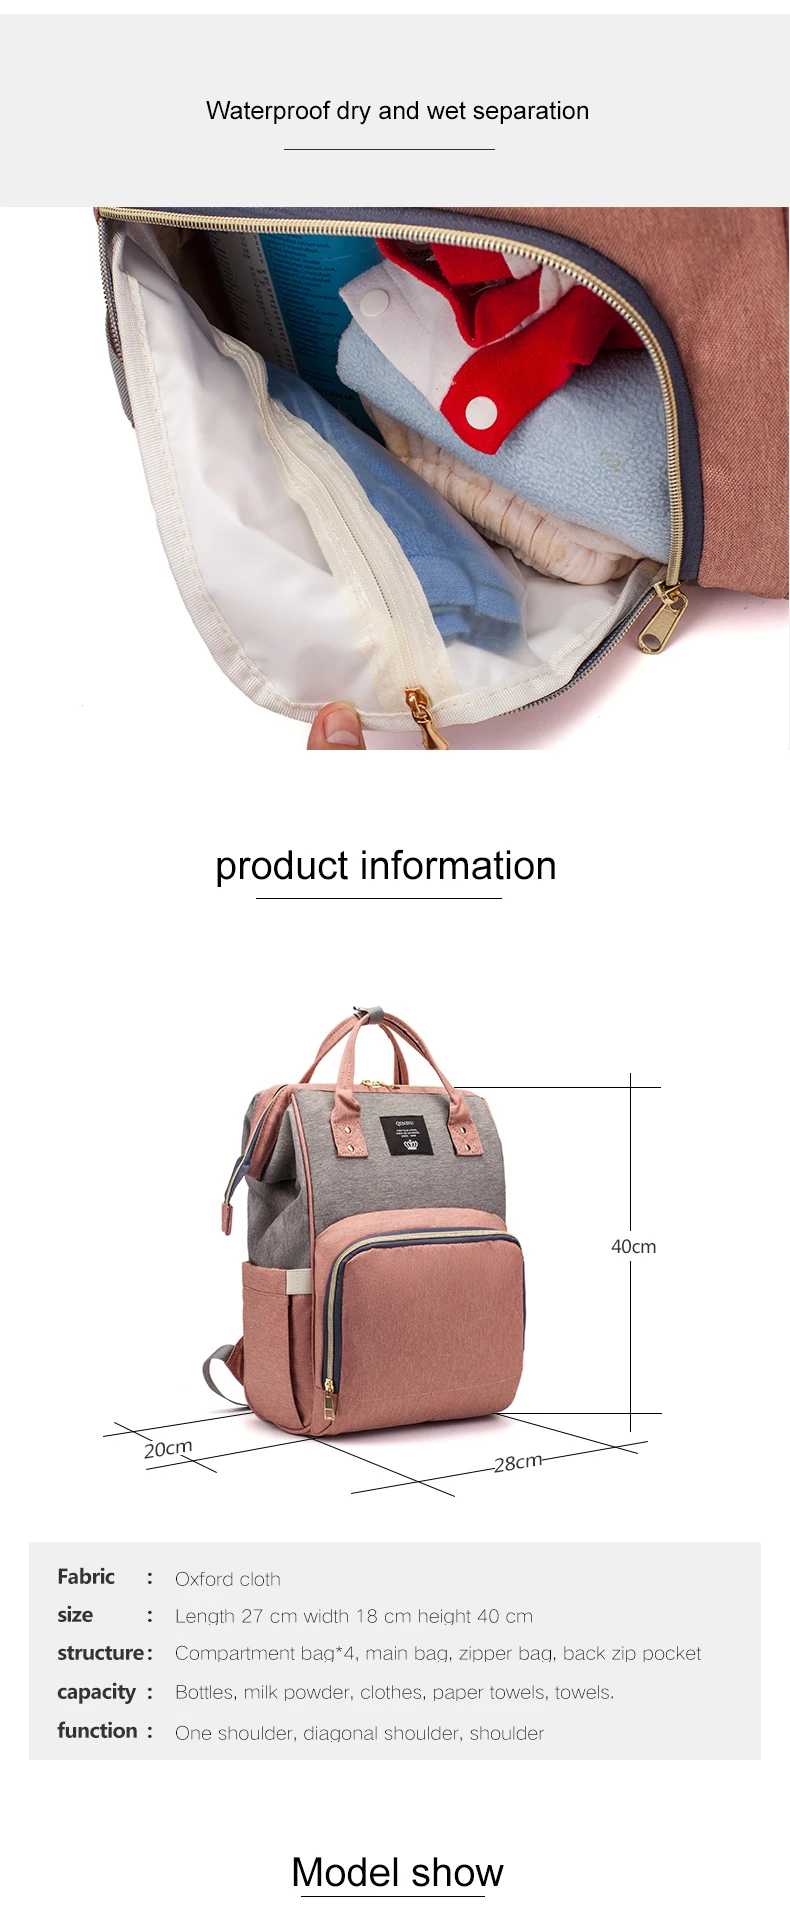 Сумки для подгузников, модный дорожный рюкзак для мам, многофункциональная вместительная сумка для кормления ребенка, рюкзак для